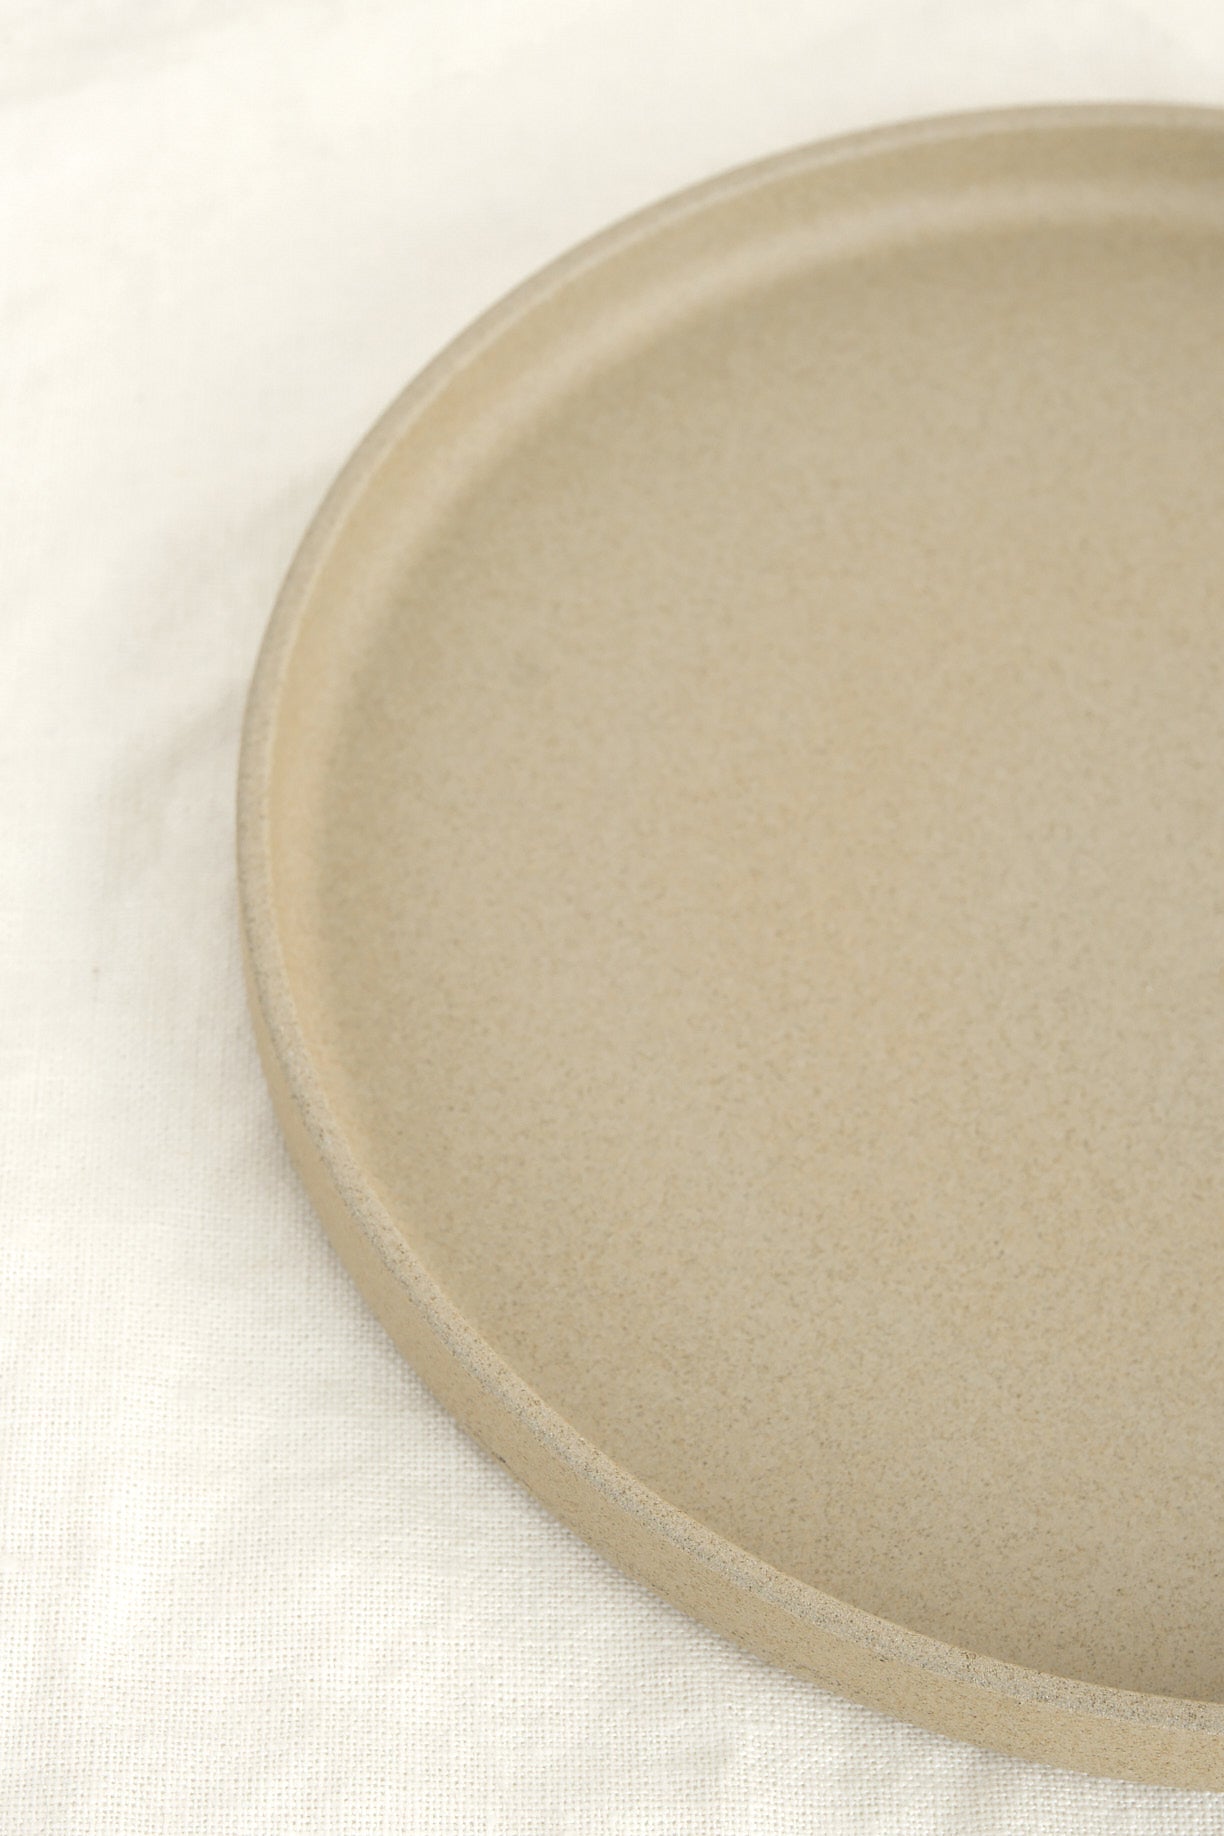 Natural Ceramic Hasami Porcelain 